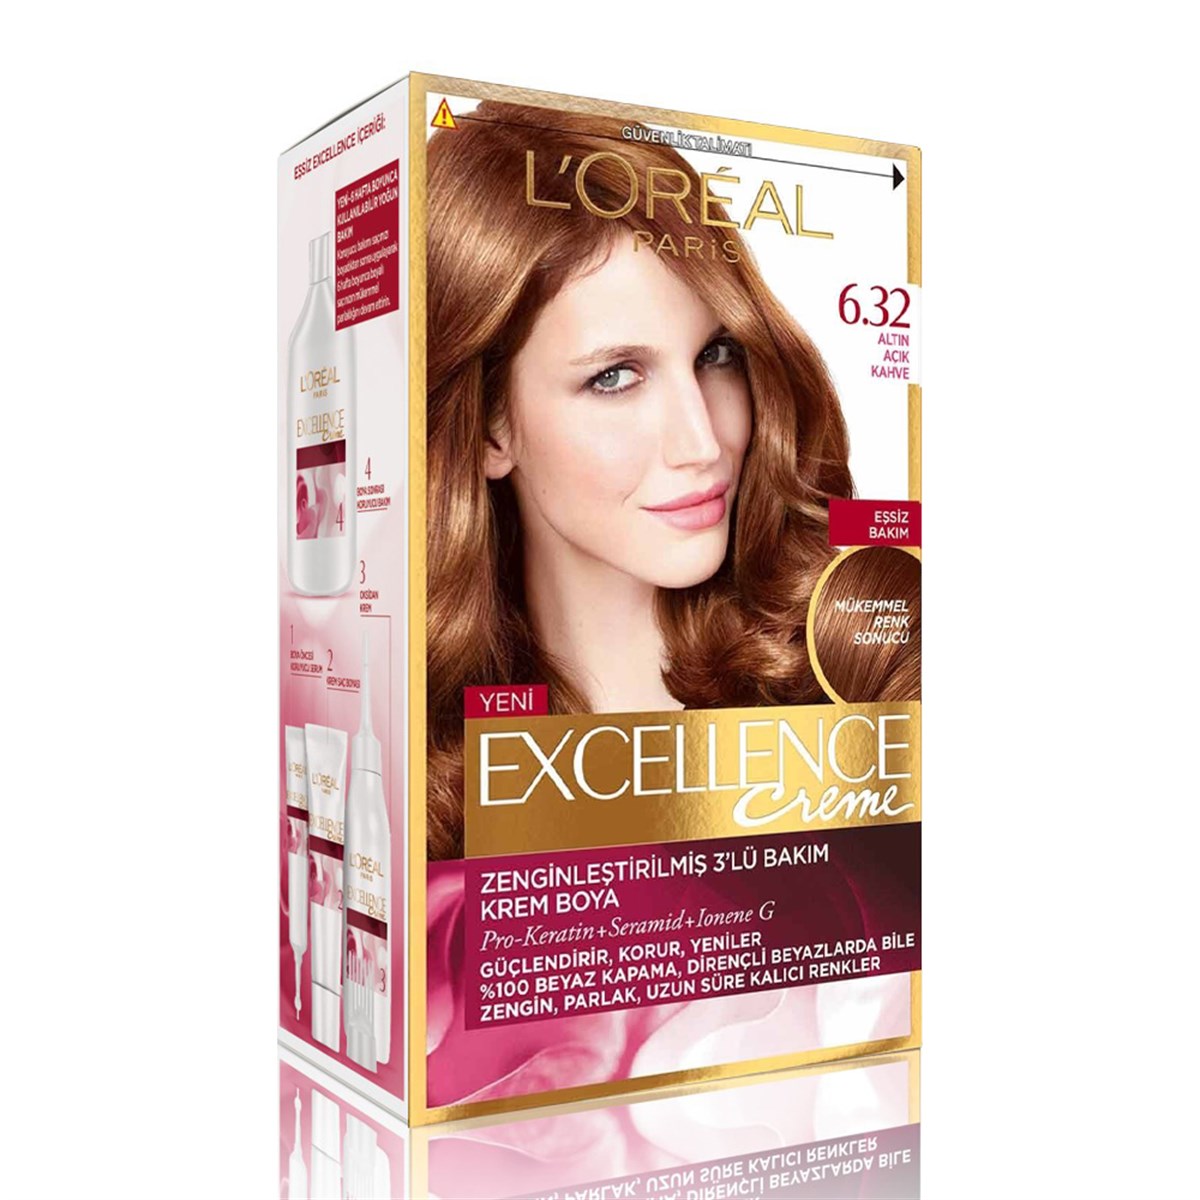 Loreal Paris Excellence Creme Saç Boyası 6.32 Altın Açık Kahve - Platin